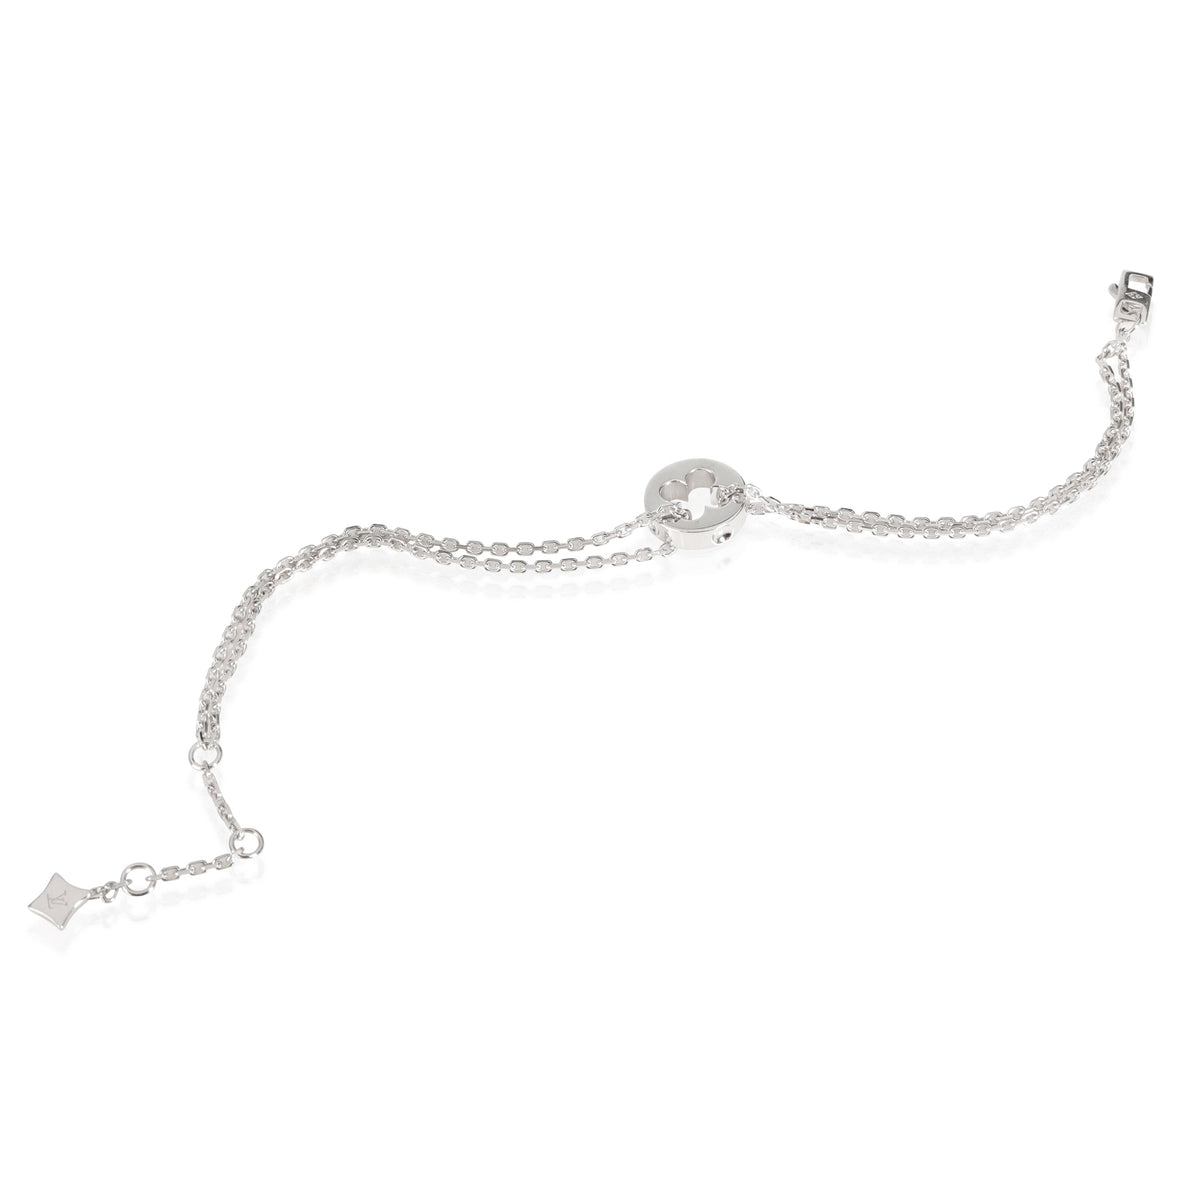 Louis Vuitton Empreinte Chain Bracelet in 18k White Gold, myGemma